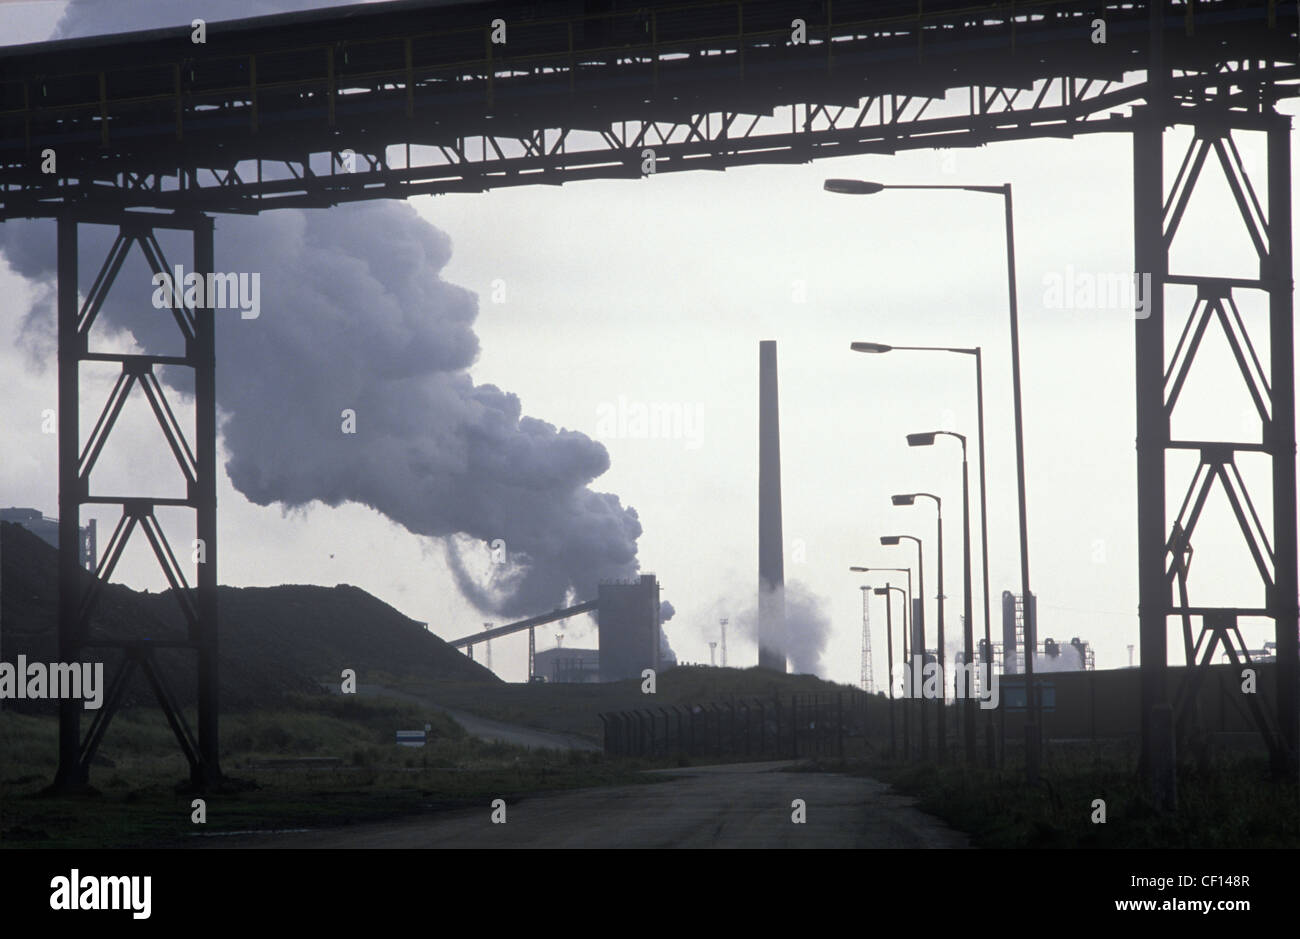 British Steel Corporation Port Talbot complexes sidérurgiques des années 80, l'industrie de la Nouvelle-Galles du Sud des années 1980 au Royaume-Uni. Paysage industriel. HOMER SYKES Banque D'Images